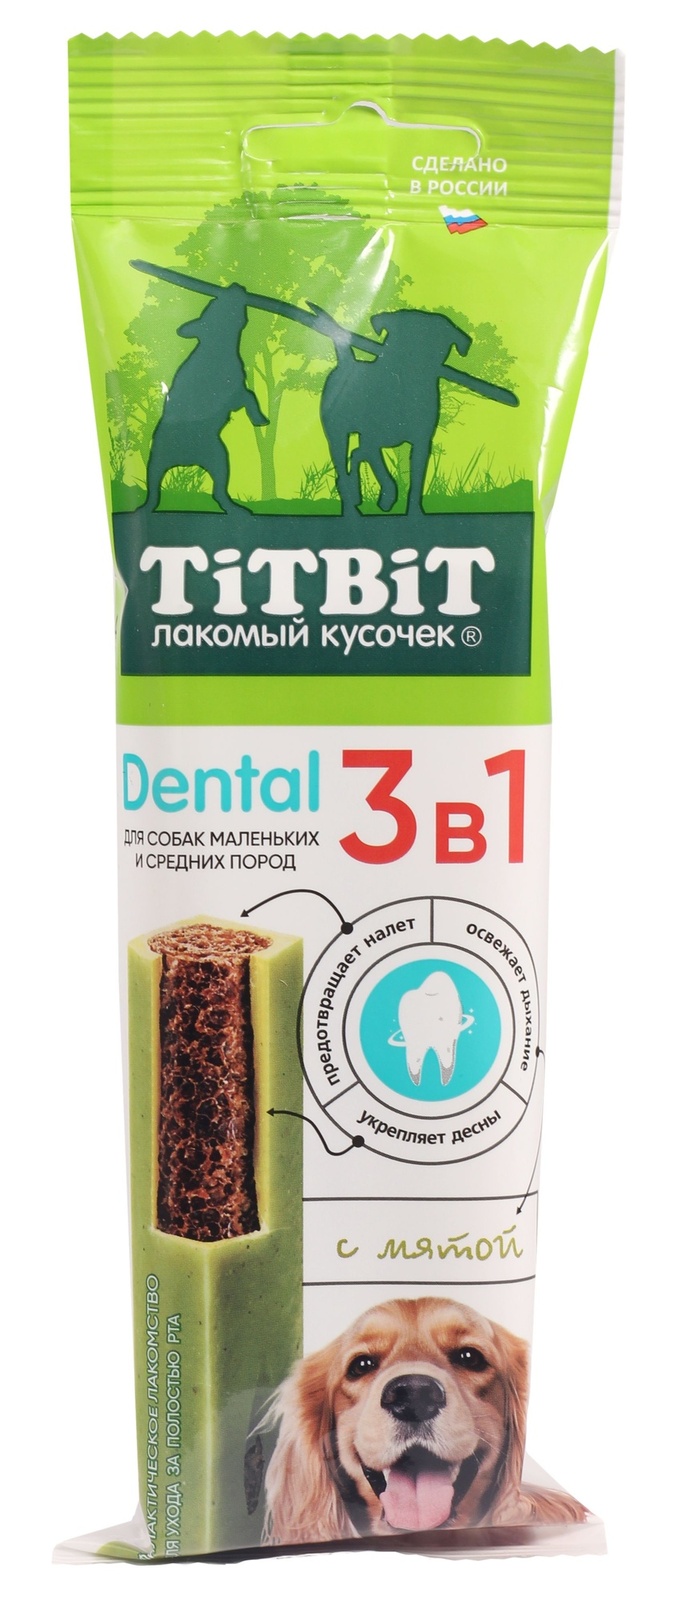 TiTBiT TiTBiT дентал 3в1 с мятой для собак мелких и средних пород 110 гр (110 гр) фотографии